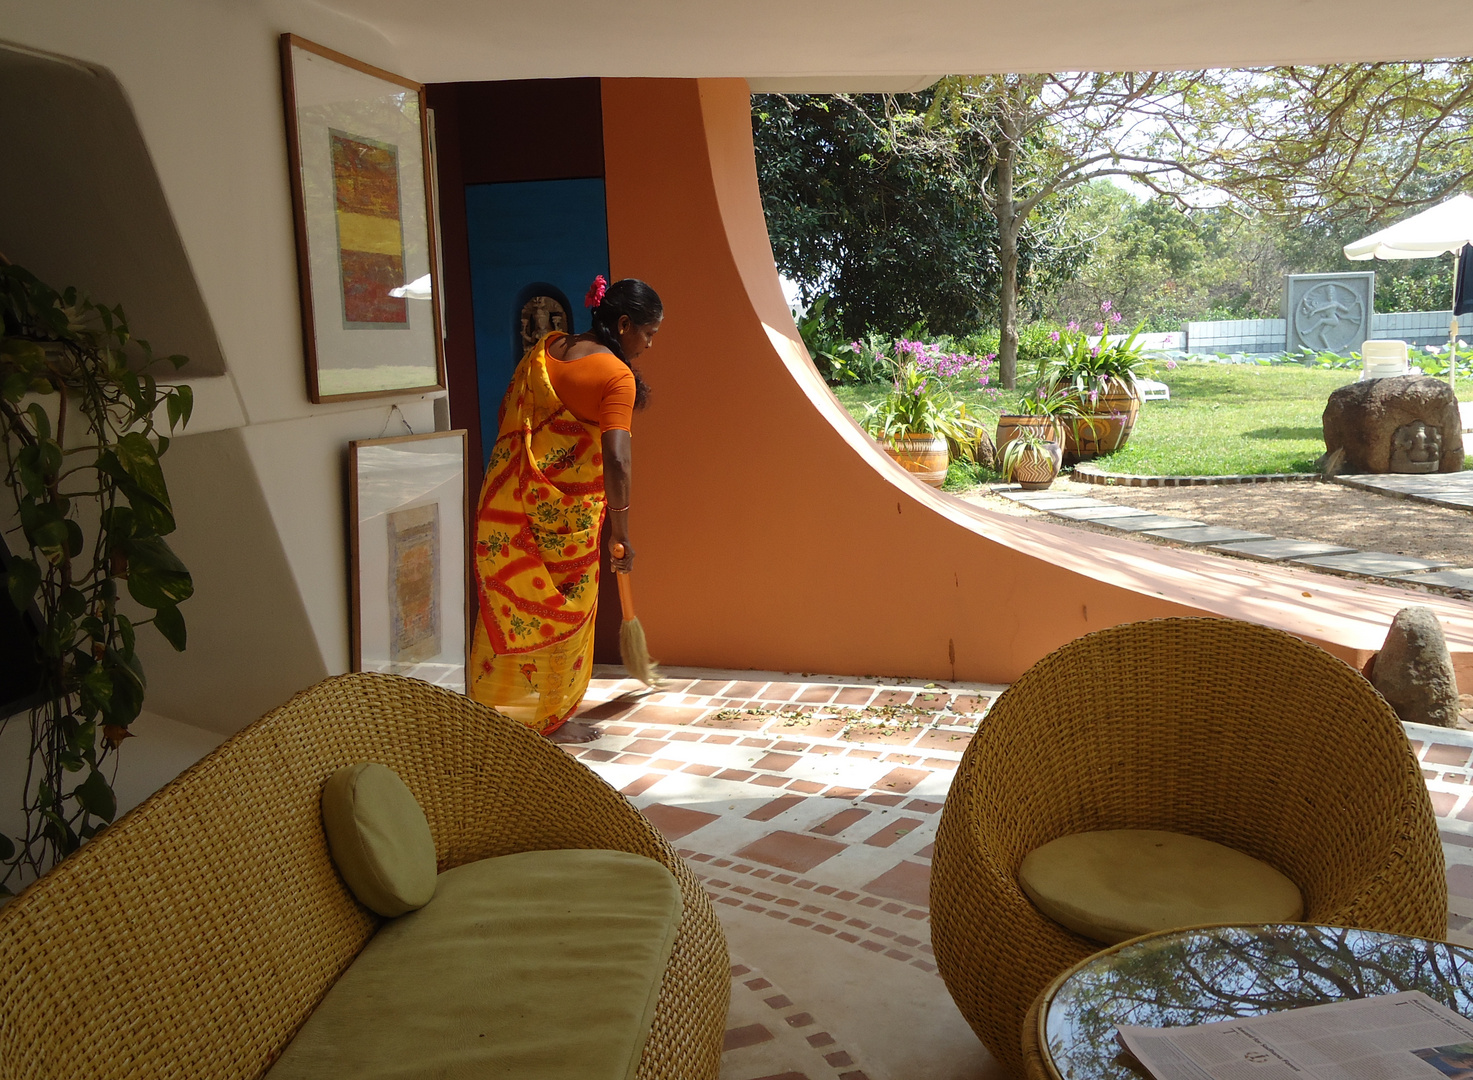 Vivre dehors dedans ! ... Tout un art chez les Aurovilliens !